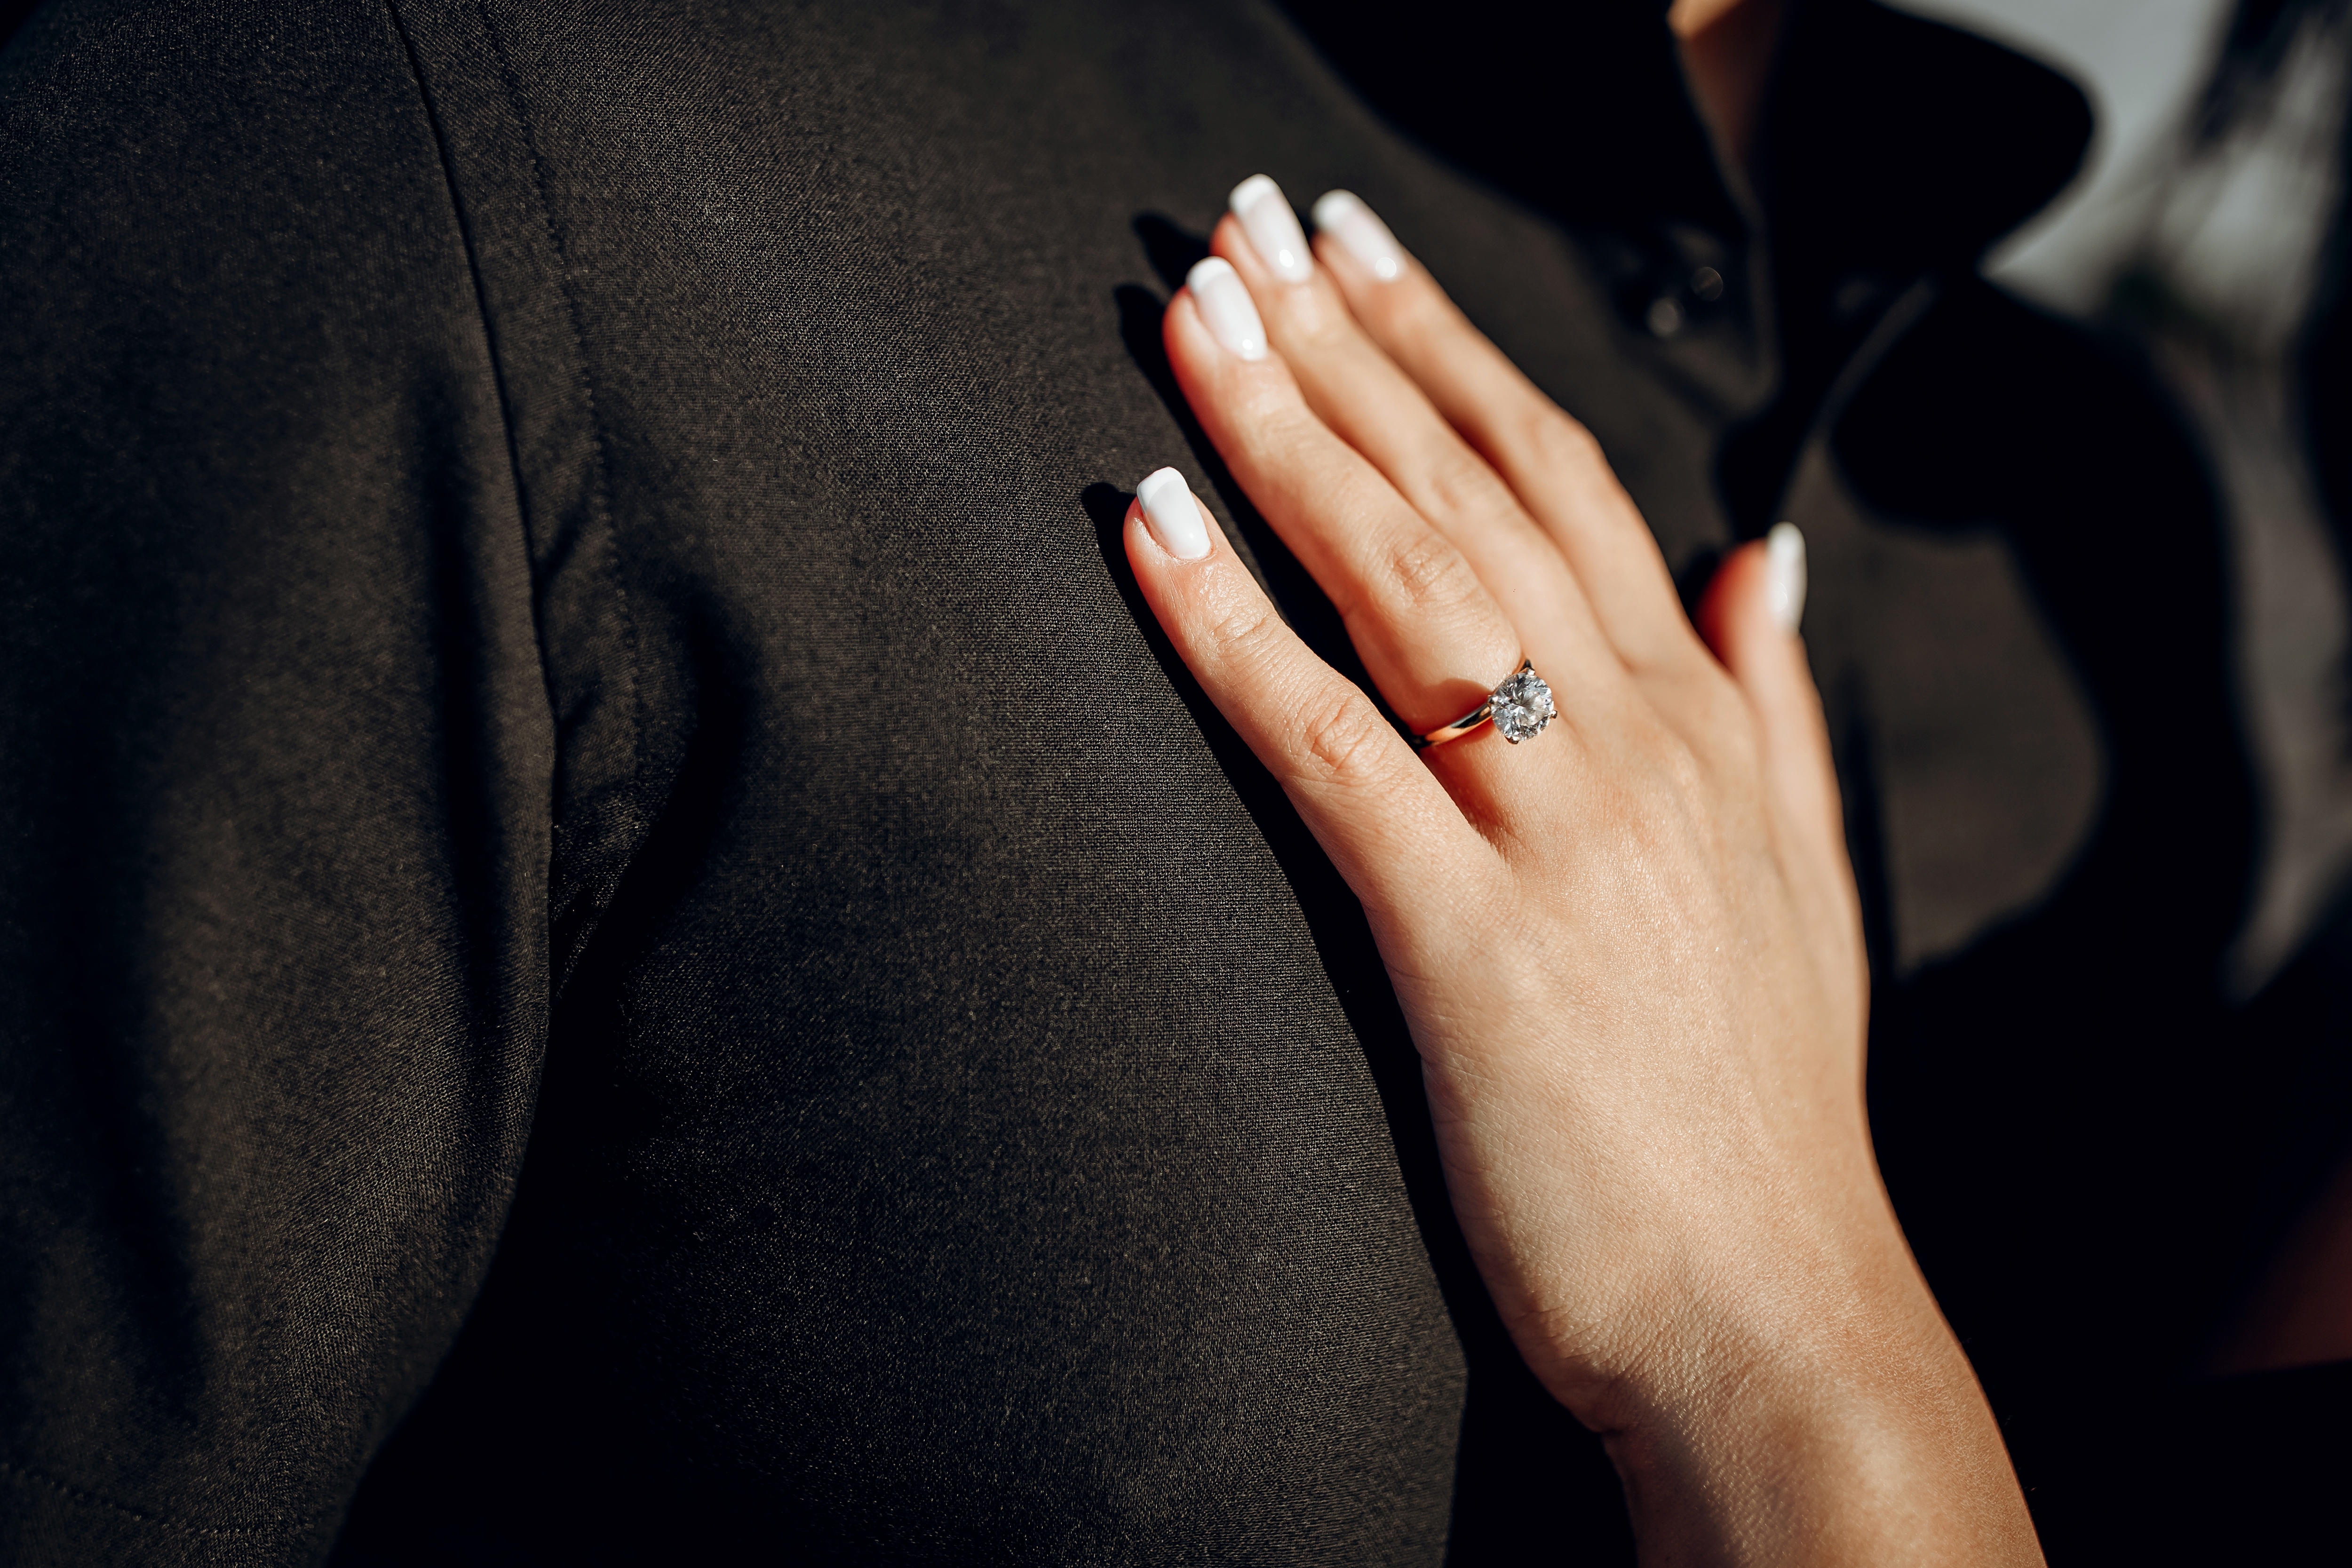 La mano de una mujer con una alianza | Fuente: Shutterstock